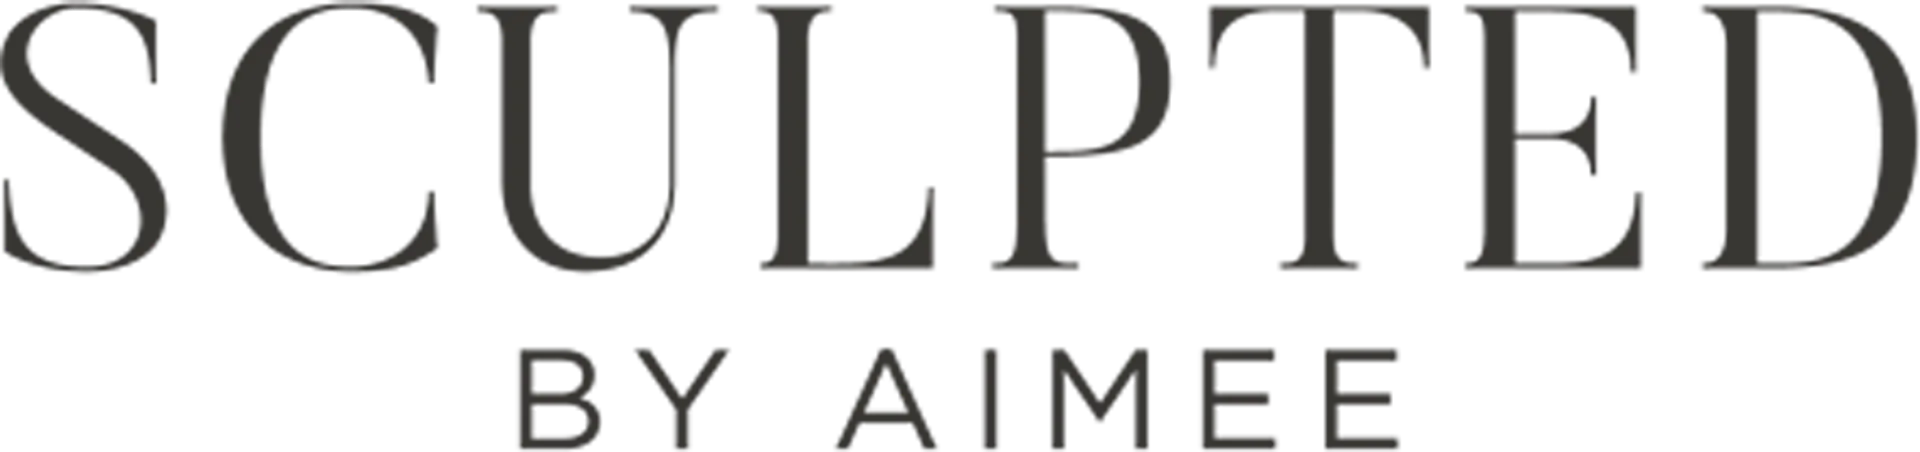 SCULPTED BY AIMEE logo